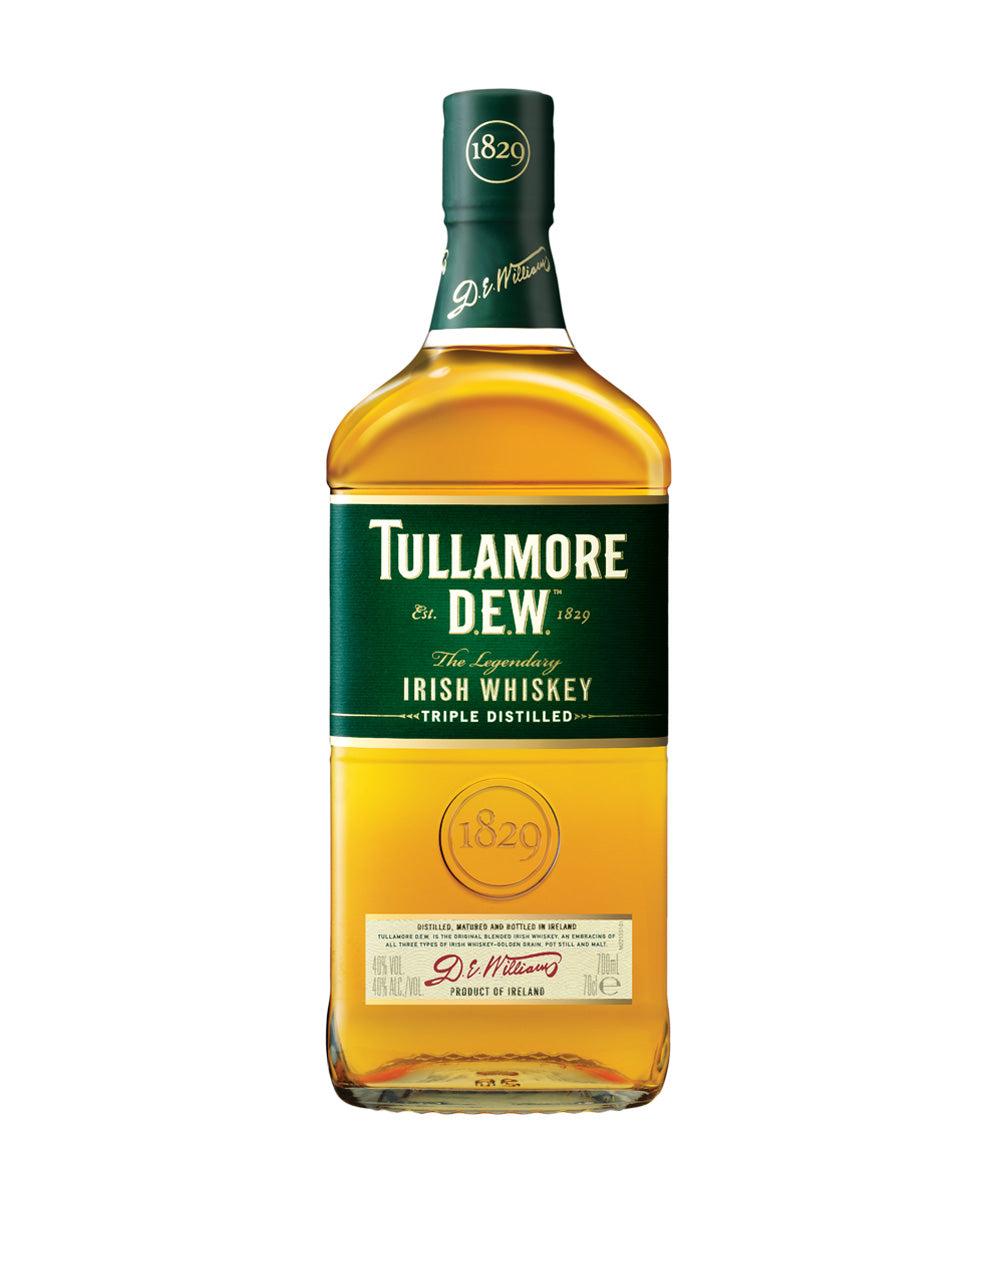 Tullamore D.E.W. Original